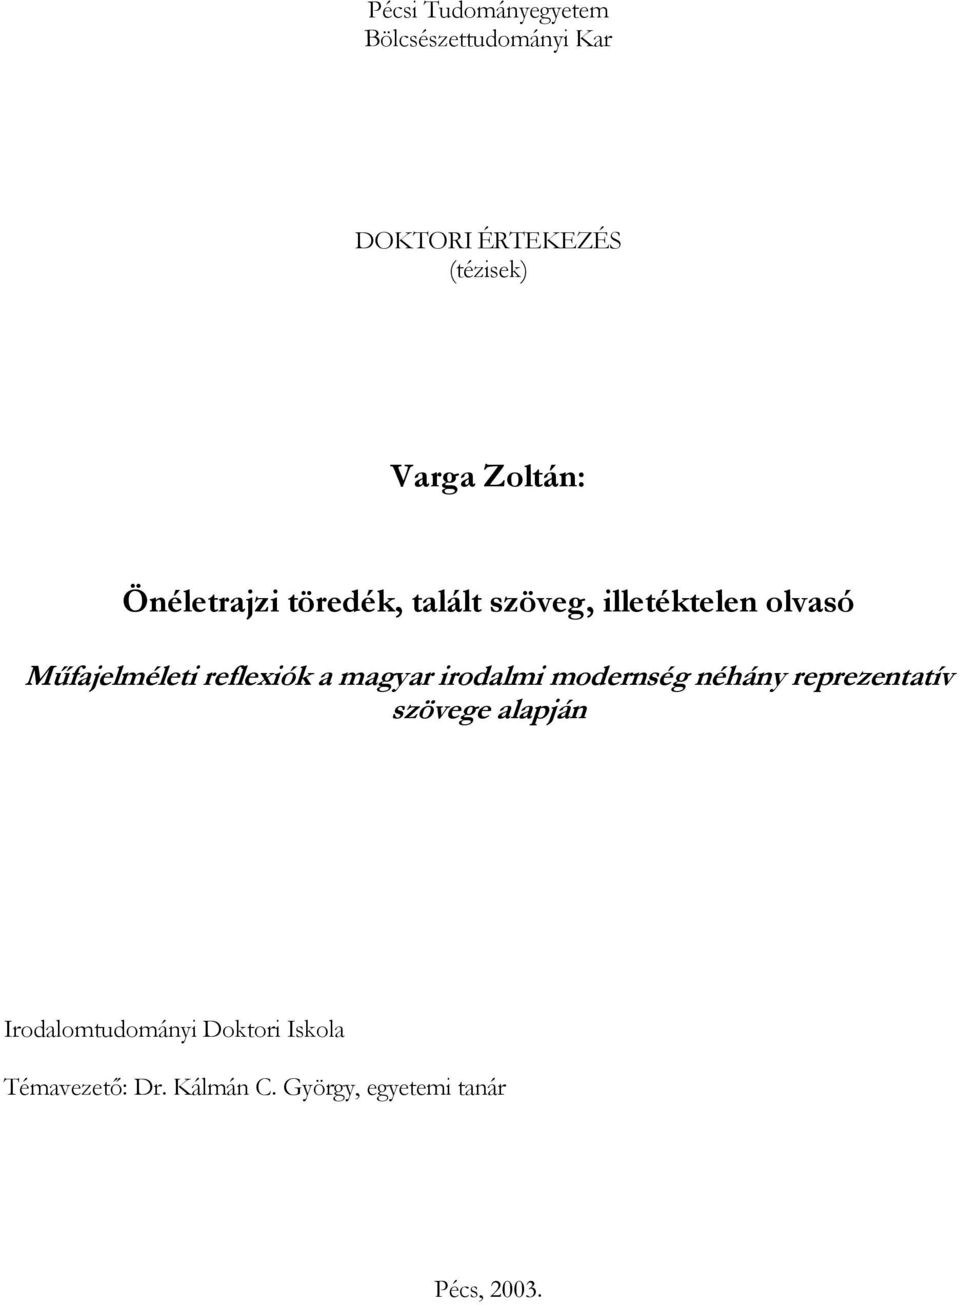 reflexiók a magyar irodalmi modernség néhány reprezentatív szövege alapján